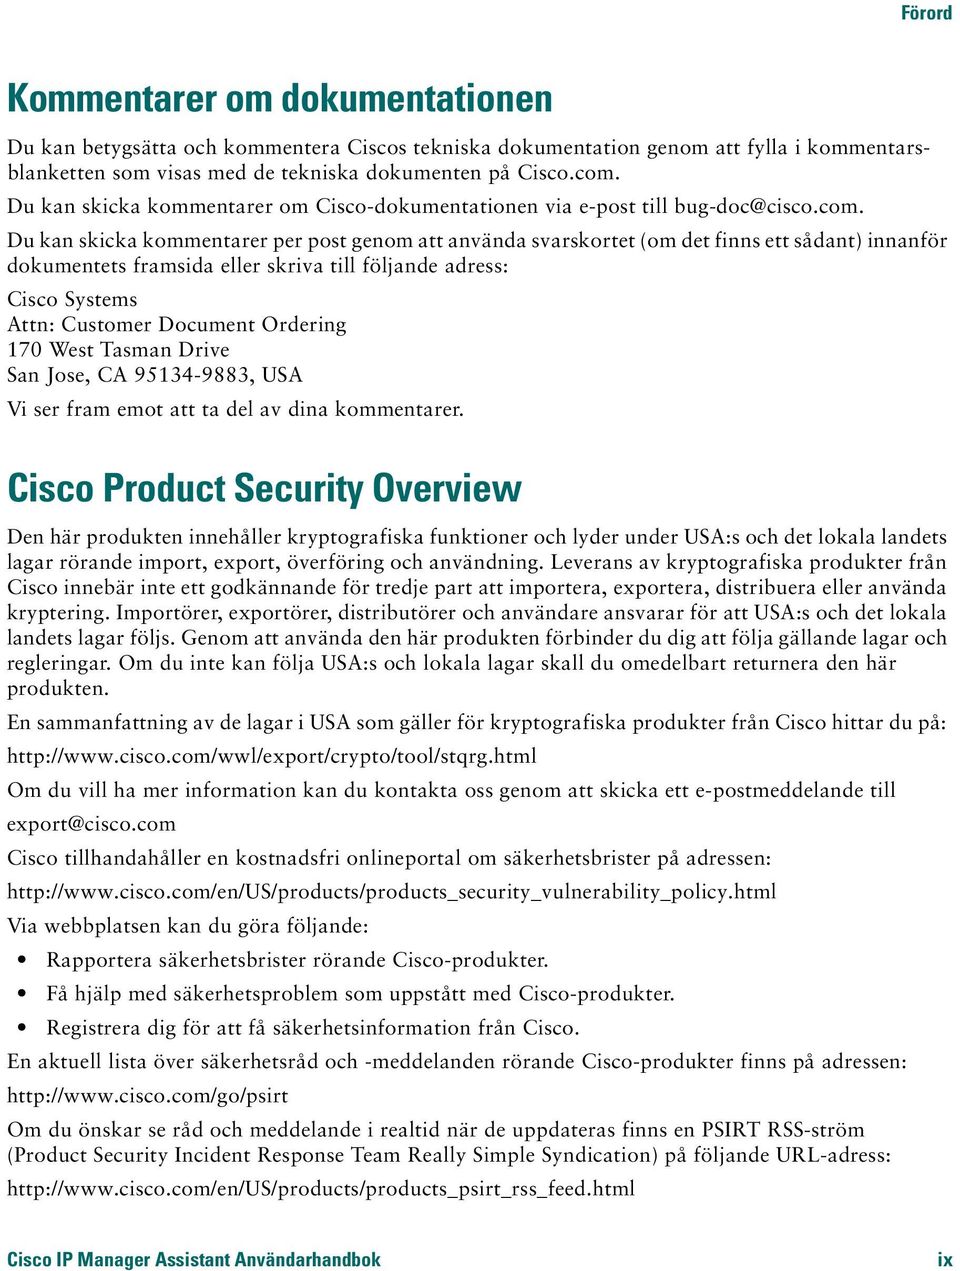 Du kan skicka kommentarer per post genom att använda svarskortet (om det finns ett sådant) innanför dokumentets framsida eller skriva till följande adress: Cisco Systems Attn: Customer Document